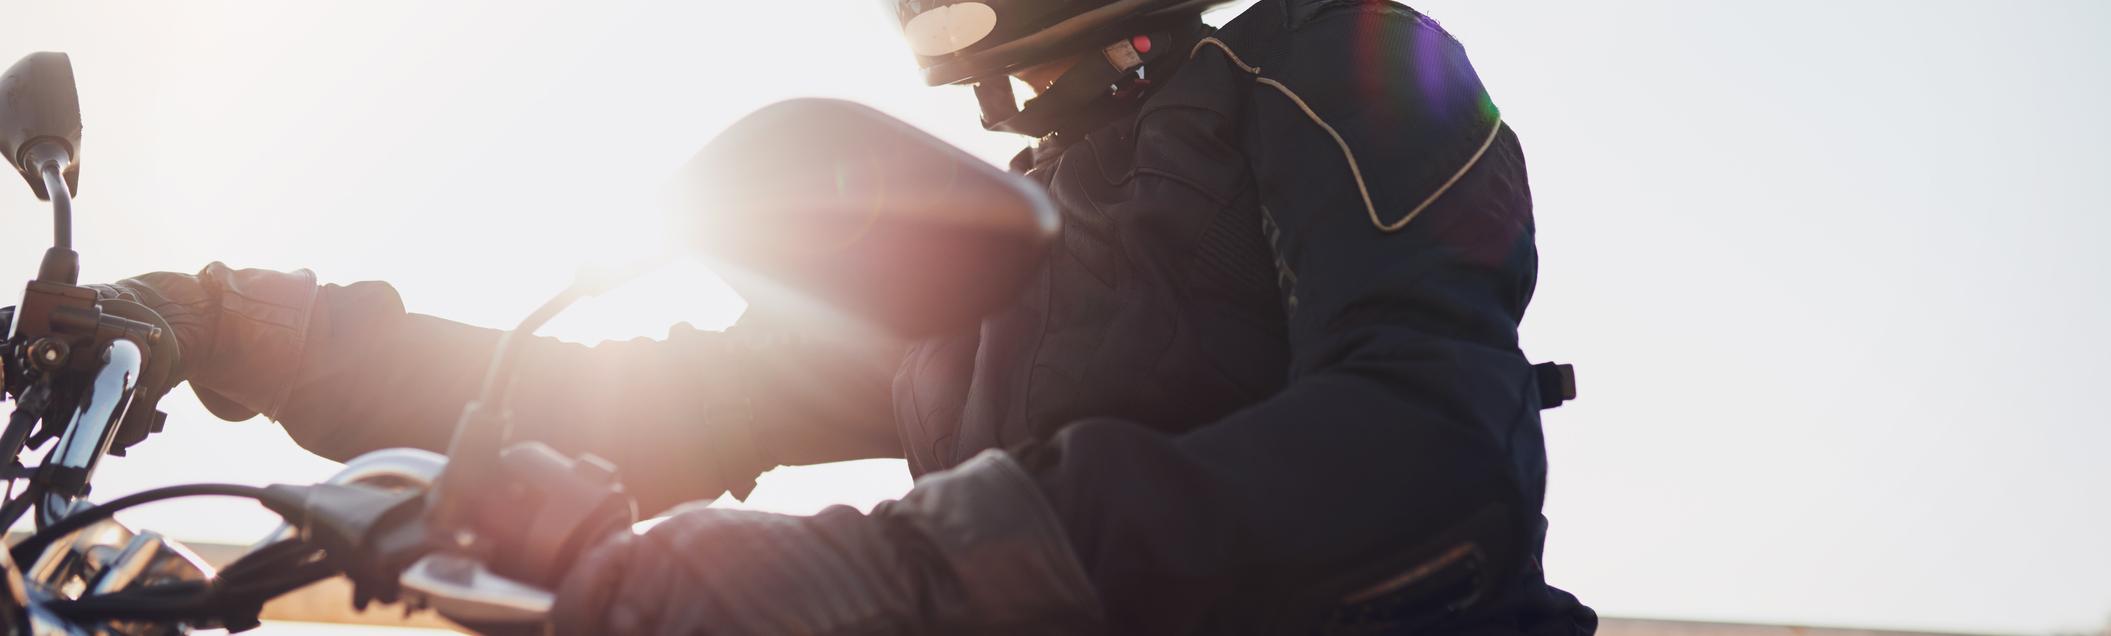 Gilet ou blouson airbag moto : choix et fonctionnement